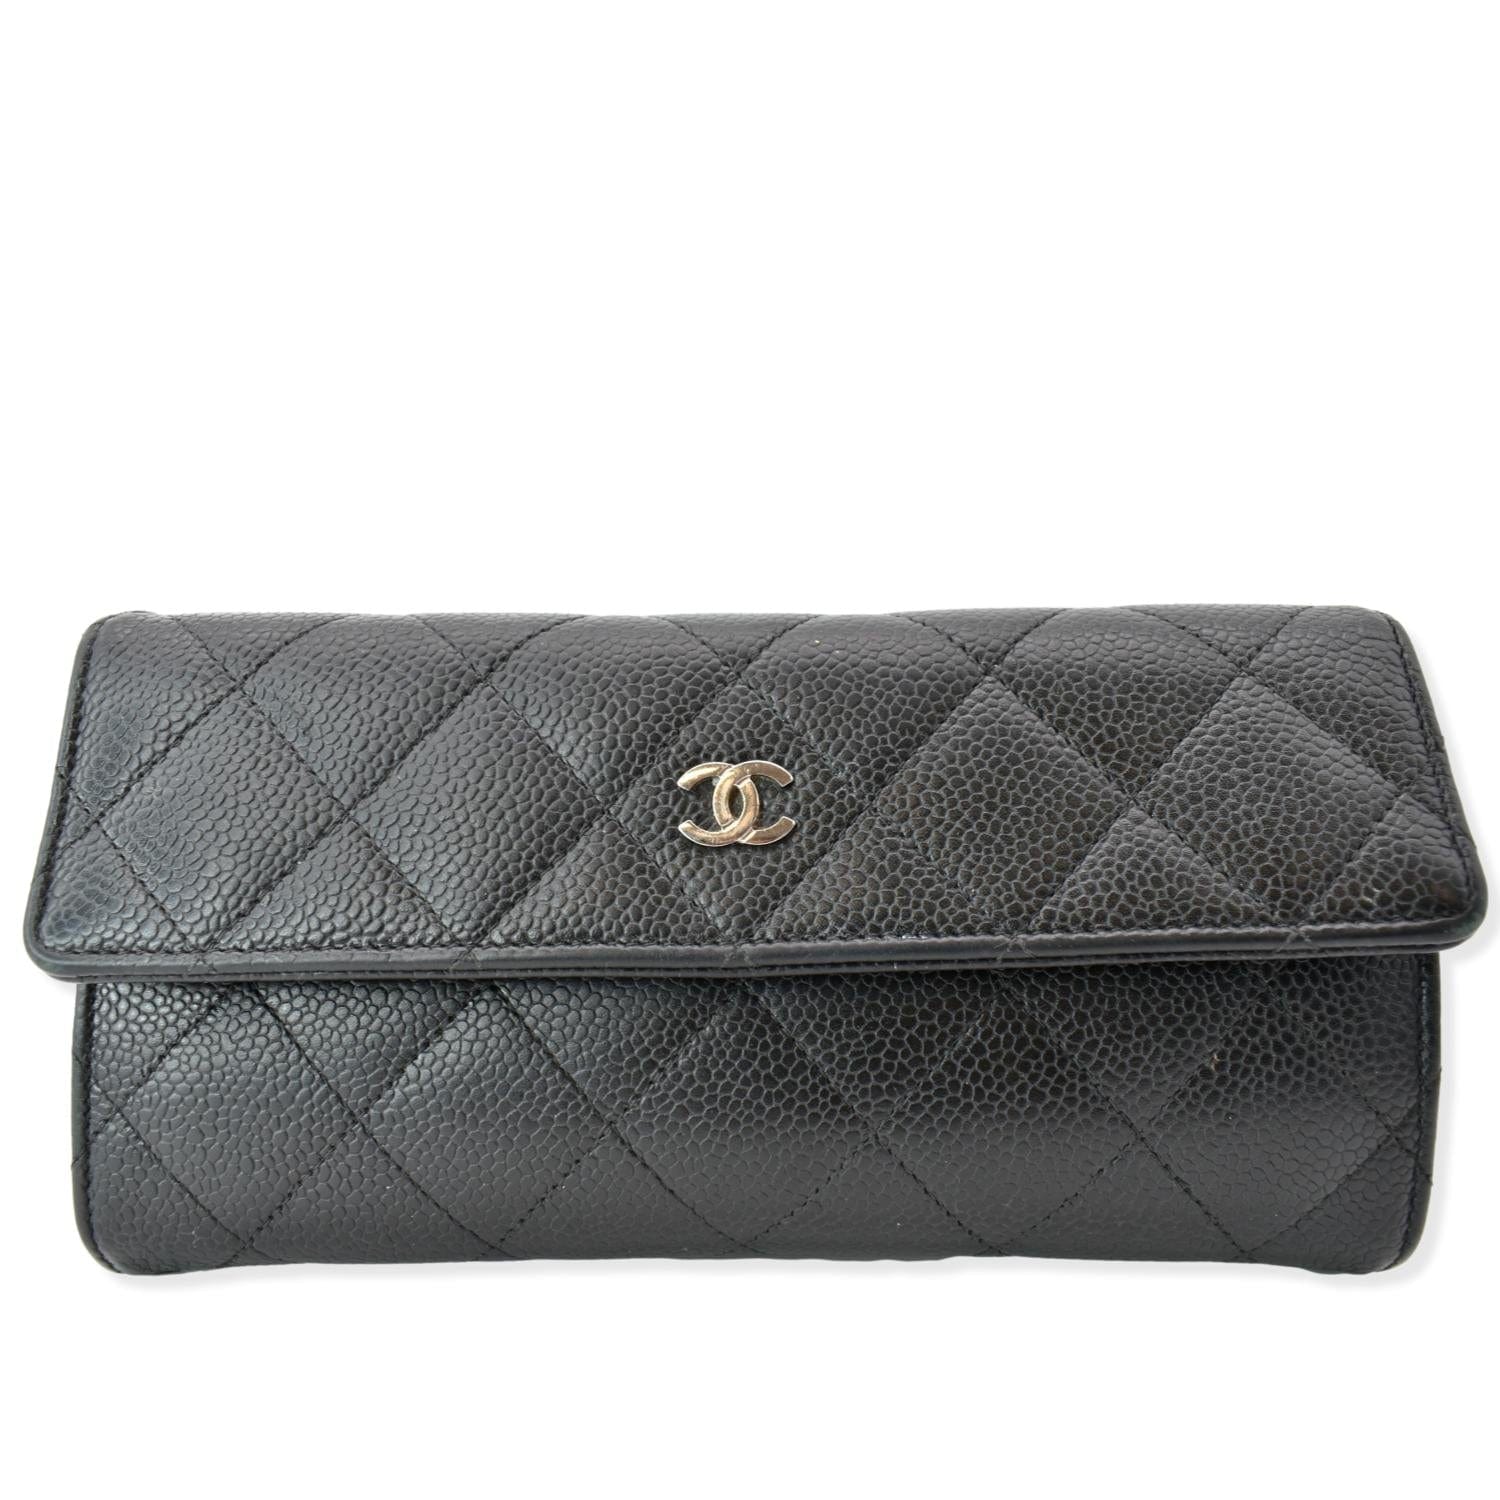 Chanel black caviar long flap wallet – Bag Babes Boutique LLC